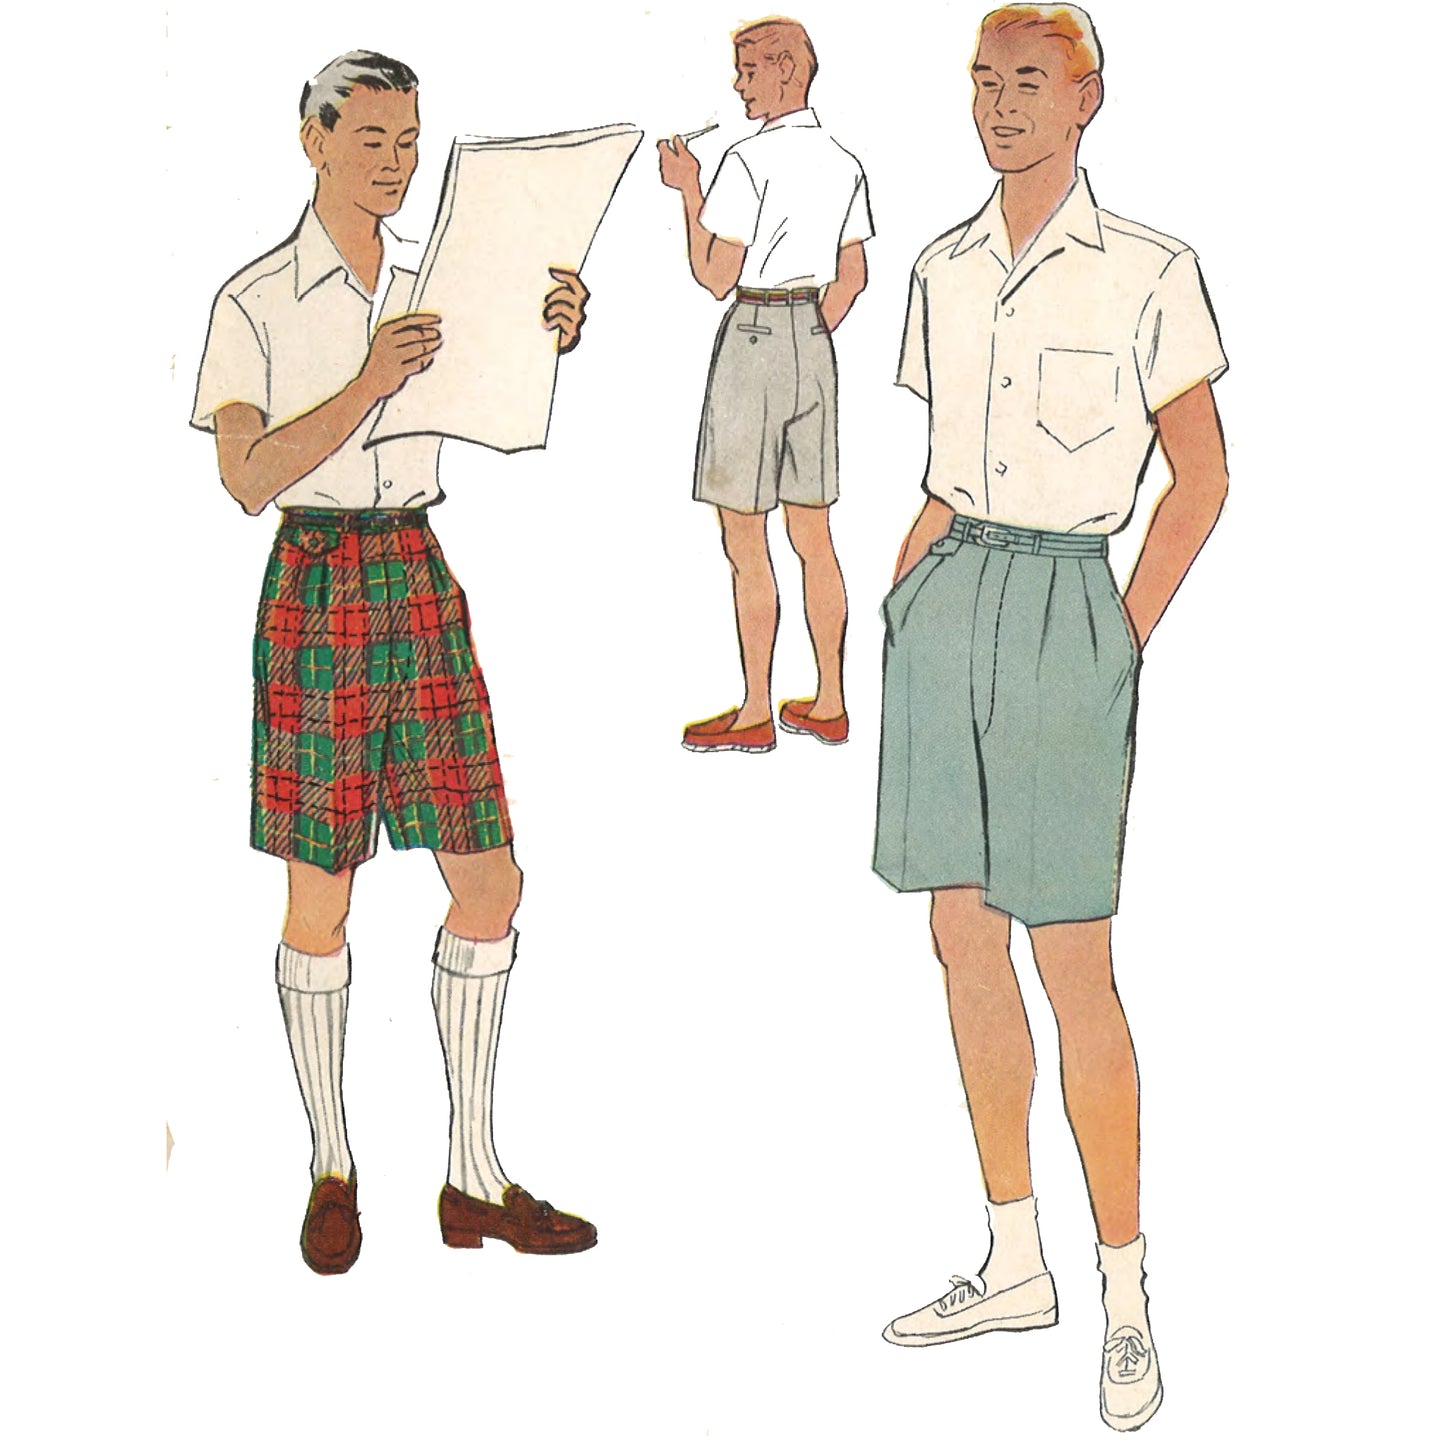 Men wearing shorts